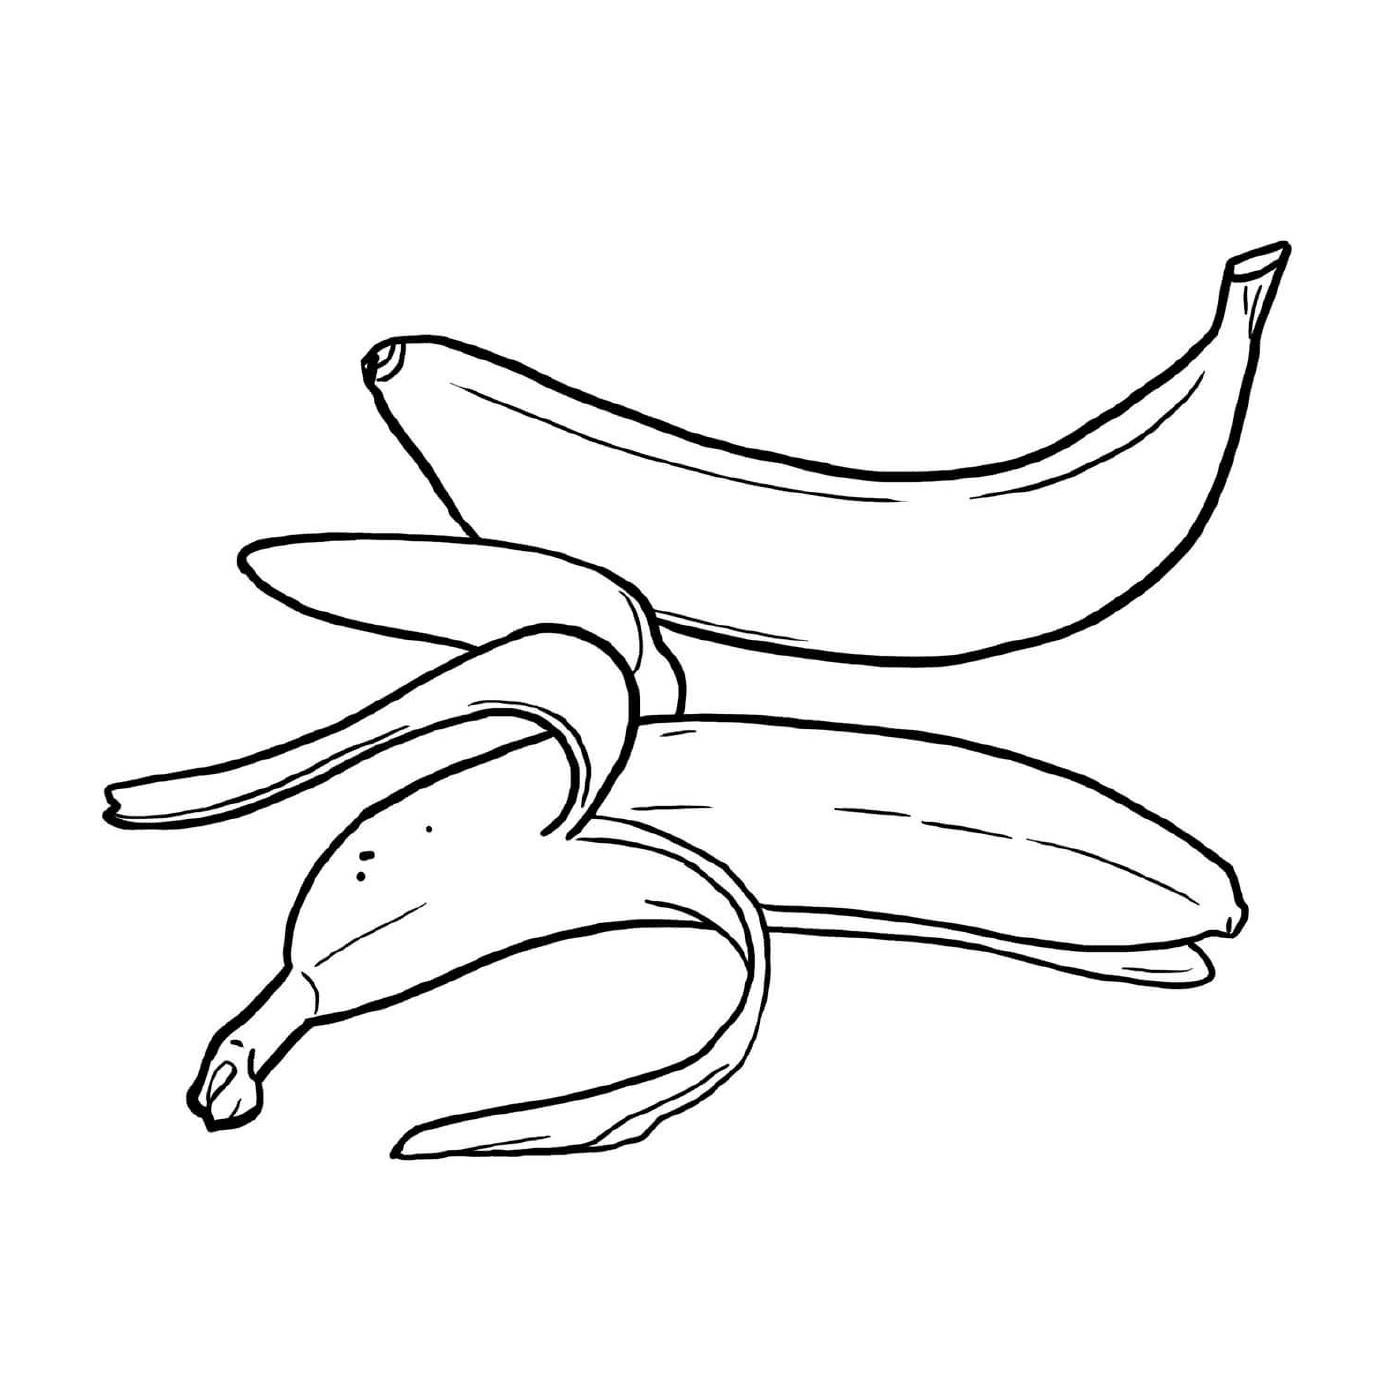  Varios plátanos colocados sobre una mesa 